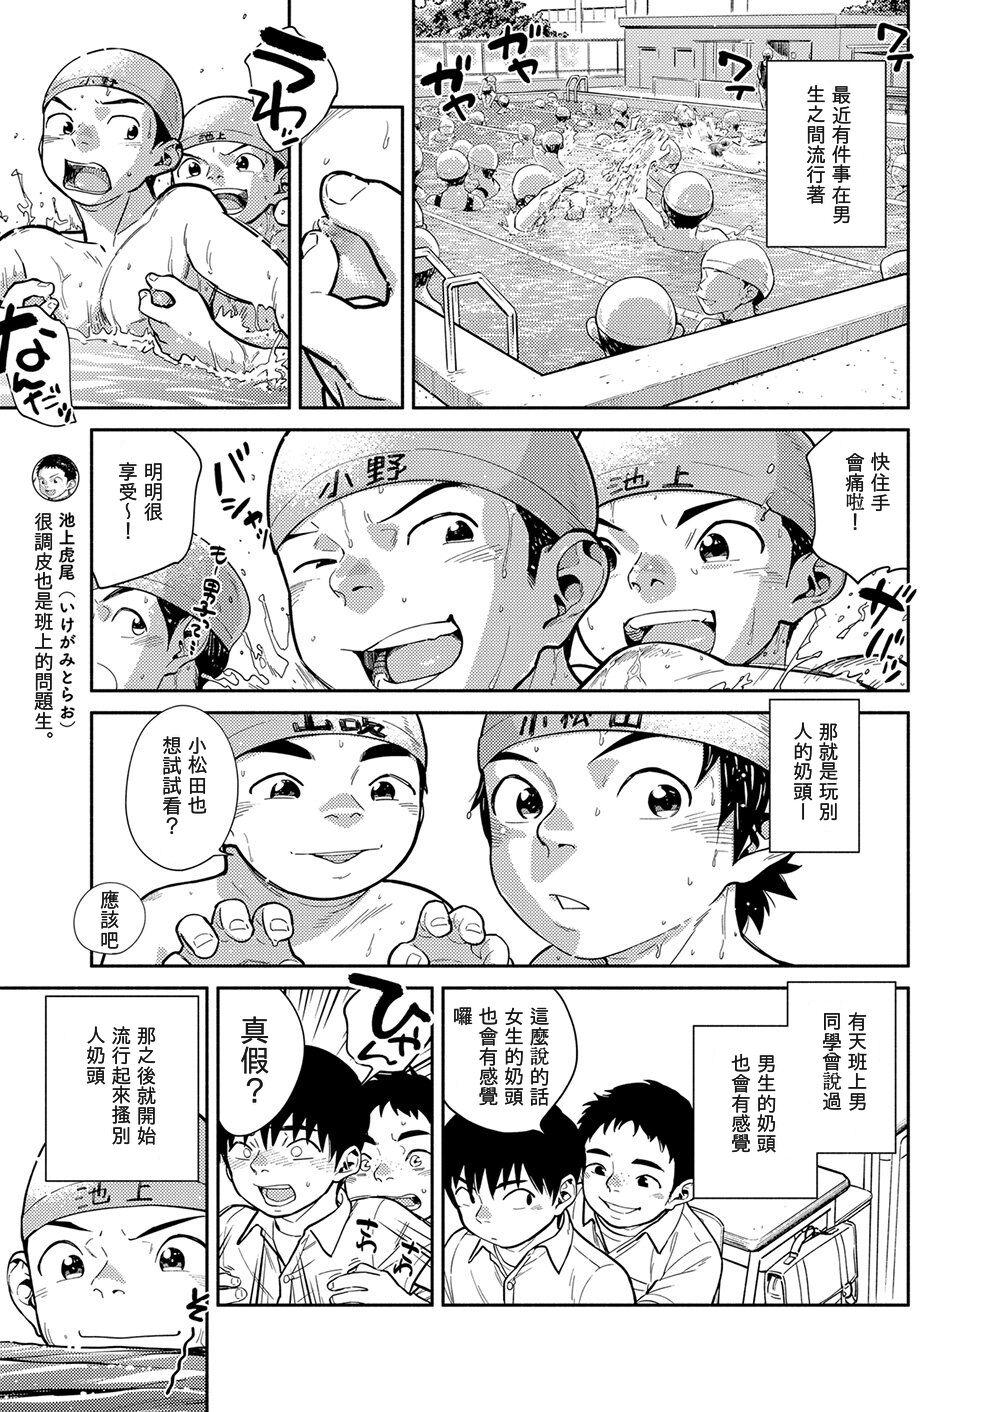 Police Manga Shounen Zoom Vol. 29 - Original Mom - Page 9